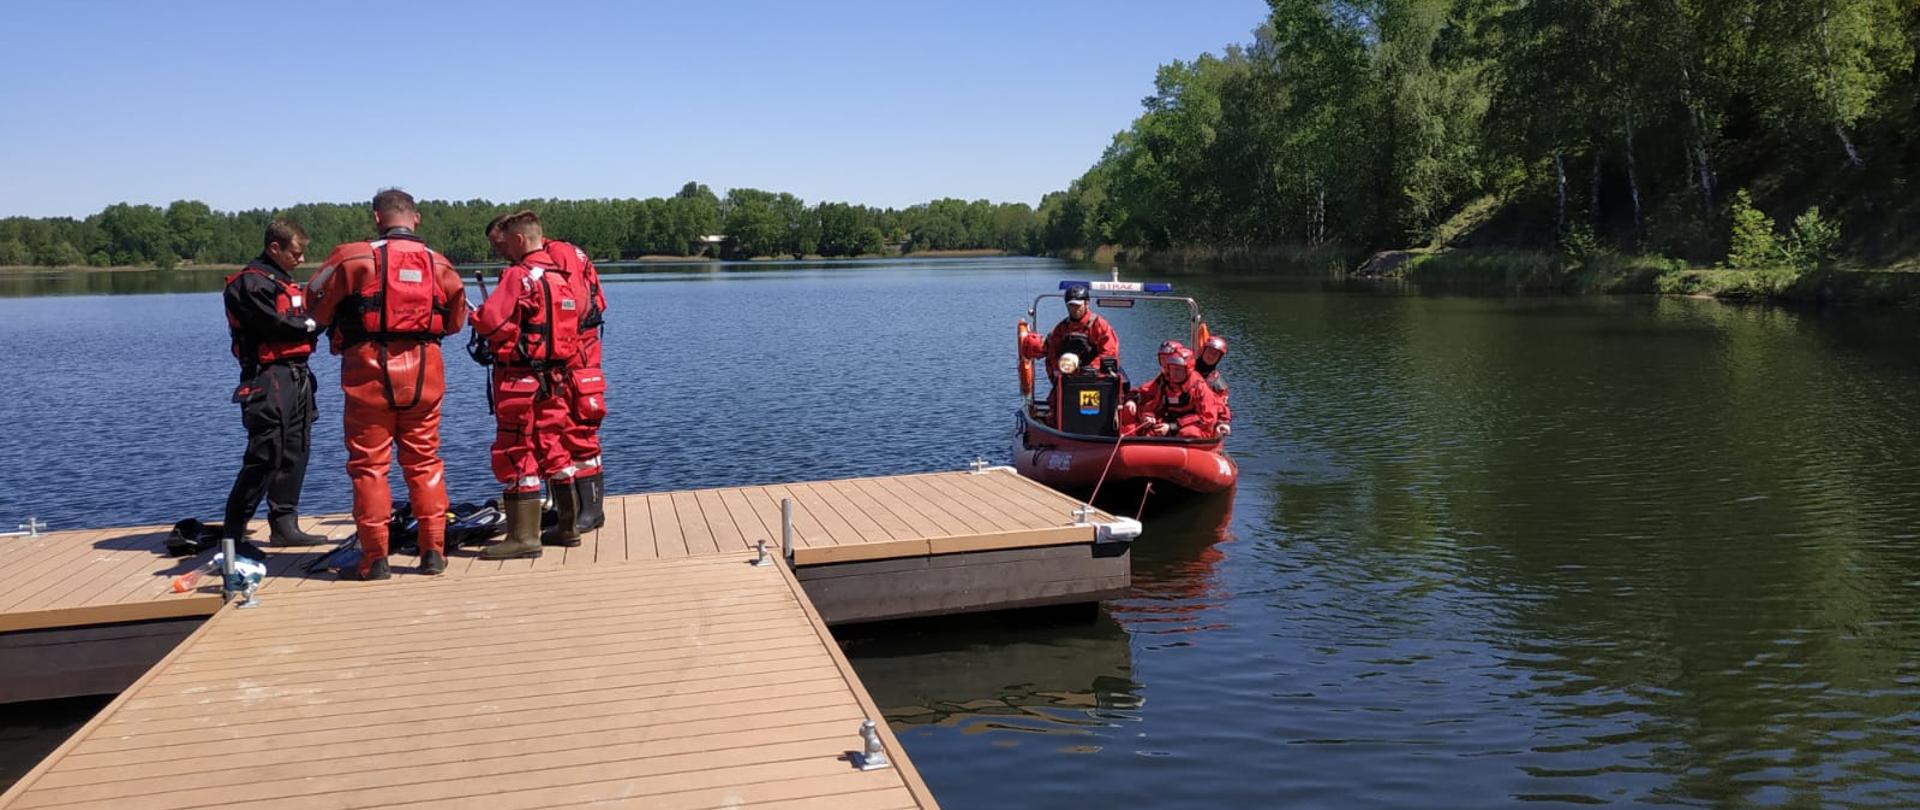 Czterech strażaków ubranych w ubrania specjalne ratowników wodnych stoi na pomoście, czterech innych podpływa do pomostu na pontonie